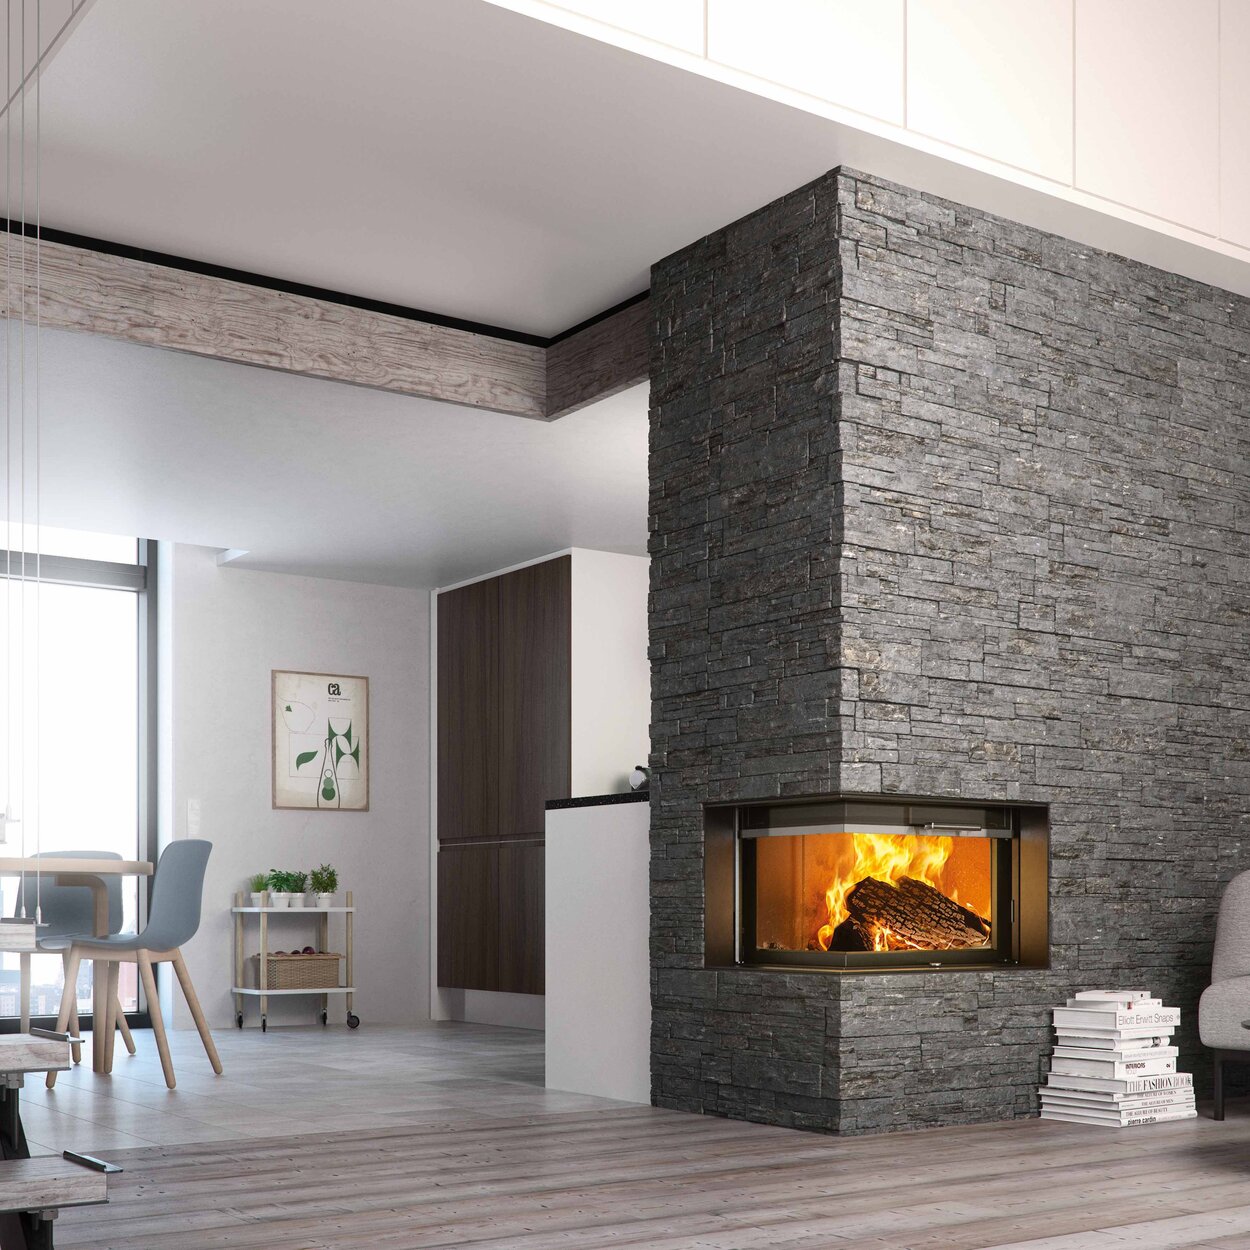 Holz-Kamin VISIO 2 rechts, der Eckkamin trennt Küche und Wohnzimmer und ist in einer rustikalen Steinmauer eingebaut